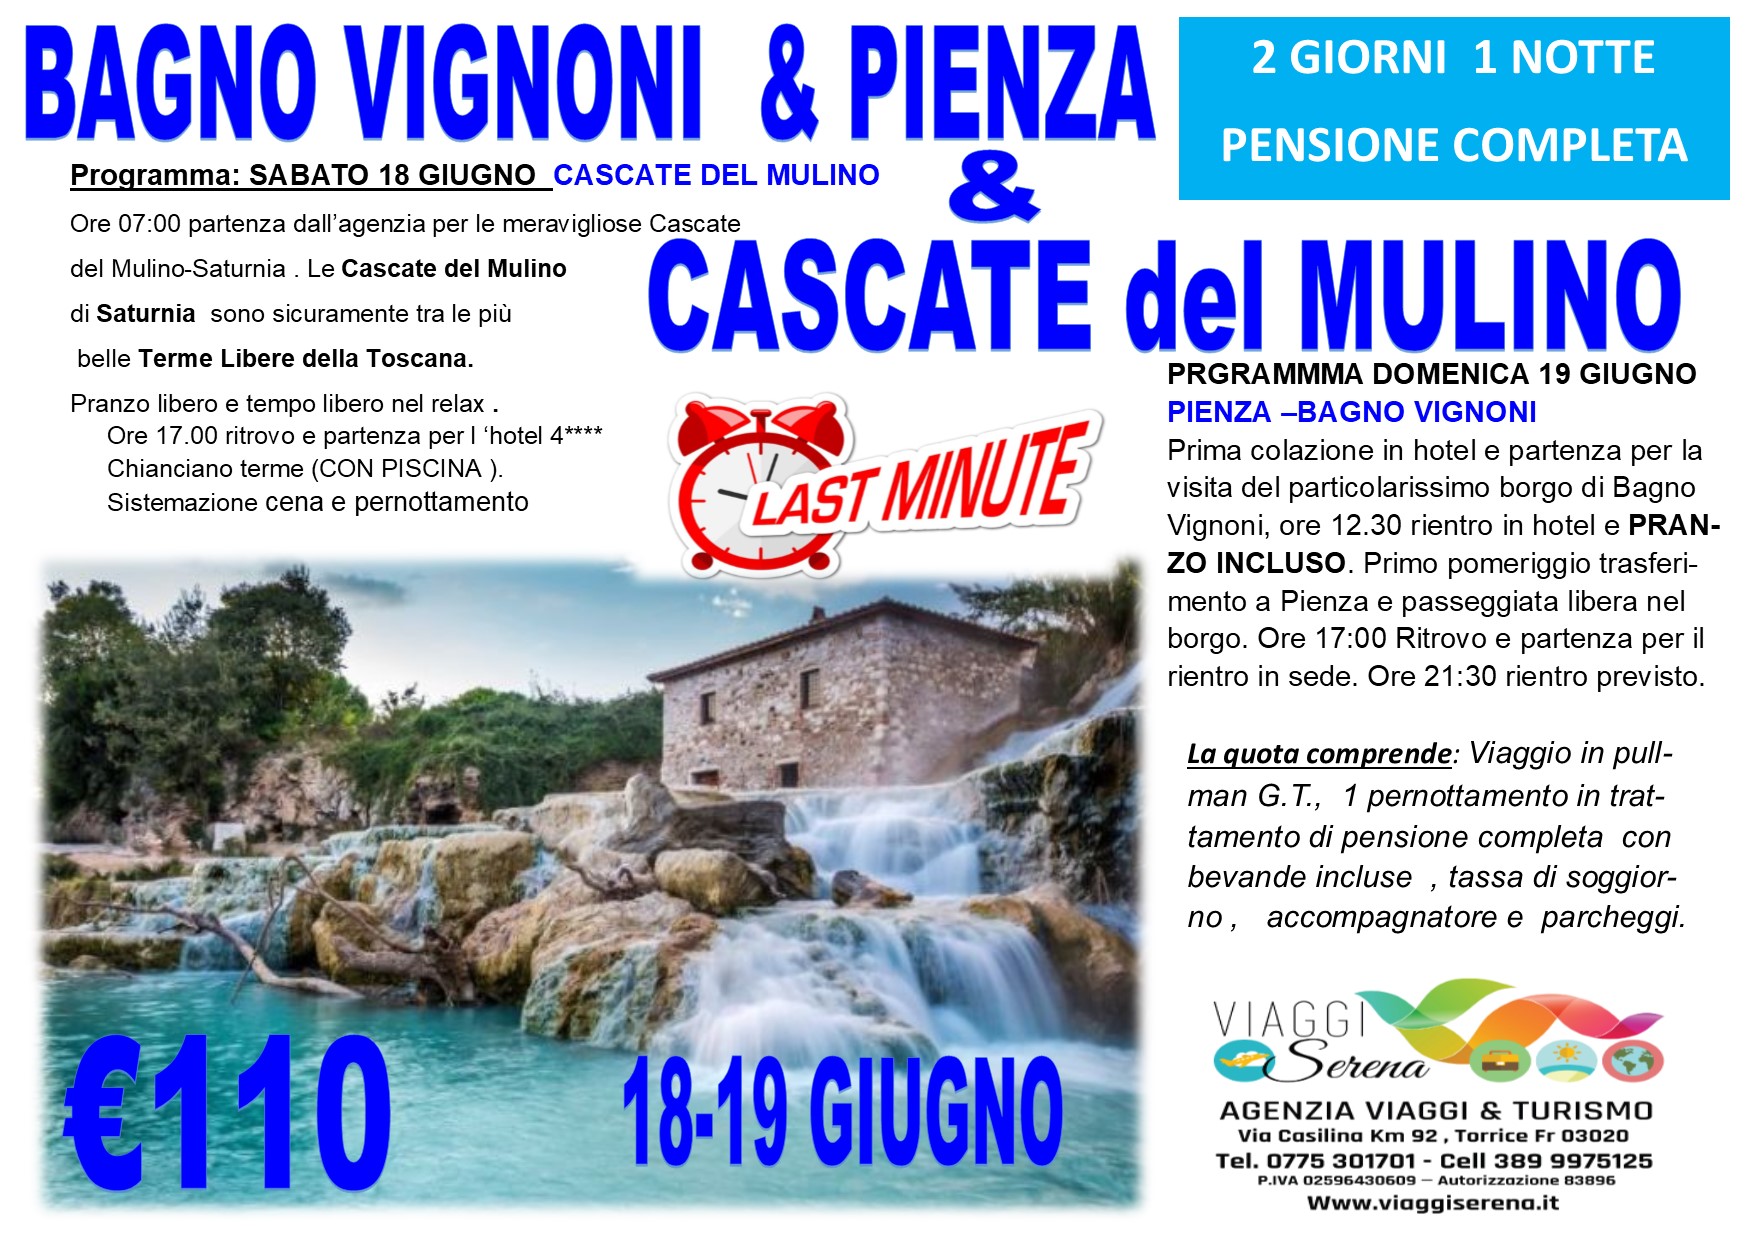 Viaggi di Gruppo: Cascate del Mulino, Bagno Vignoni & Pienza 18-19 Giugno € 110,00